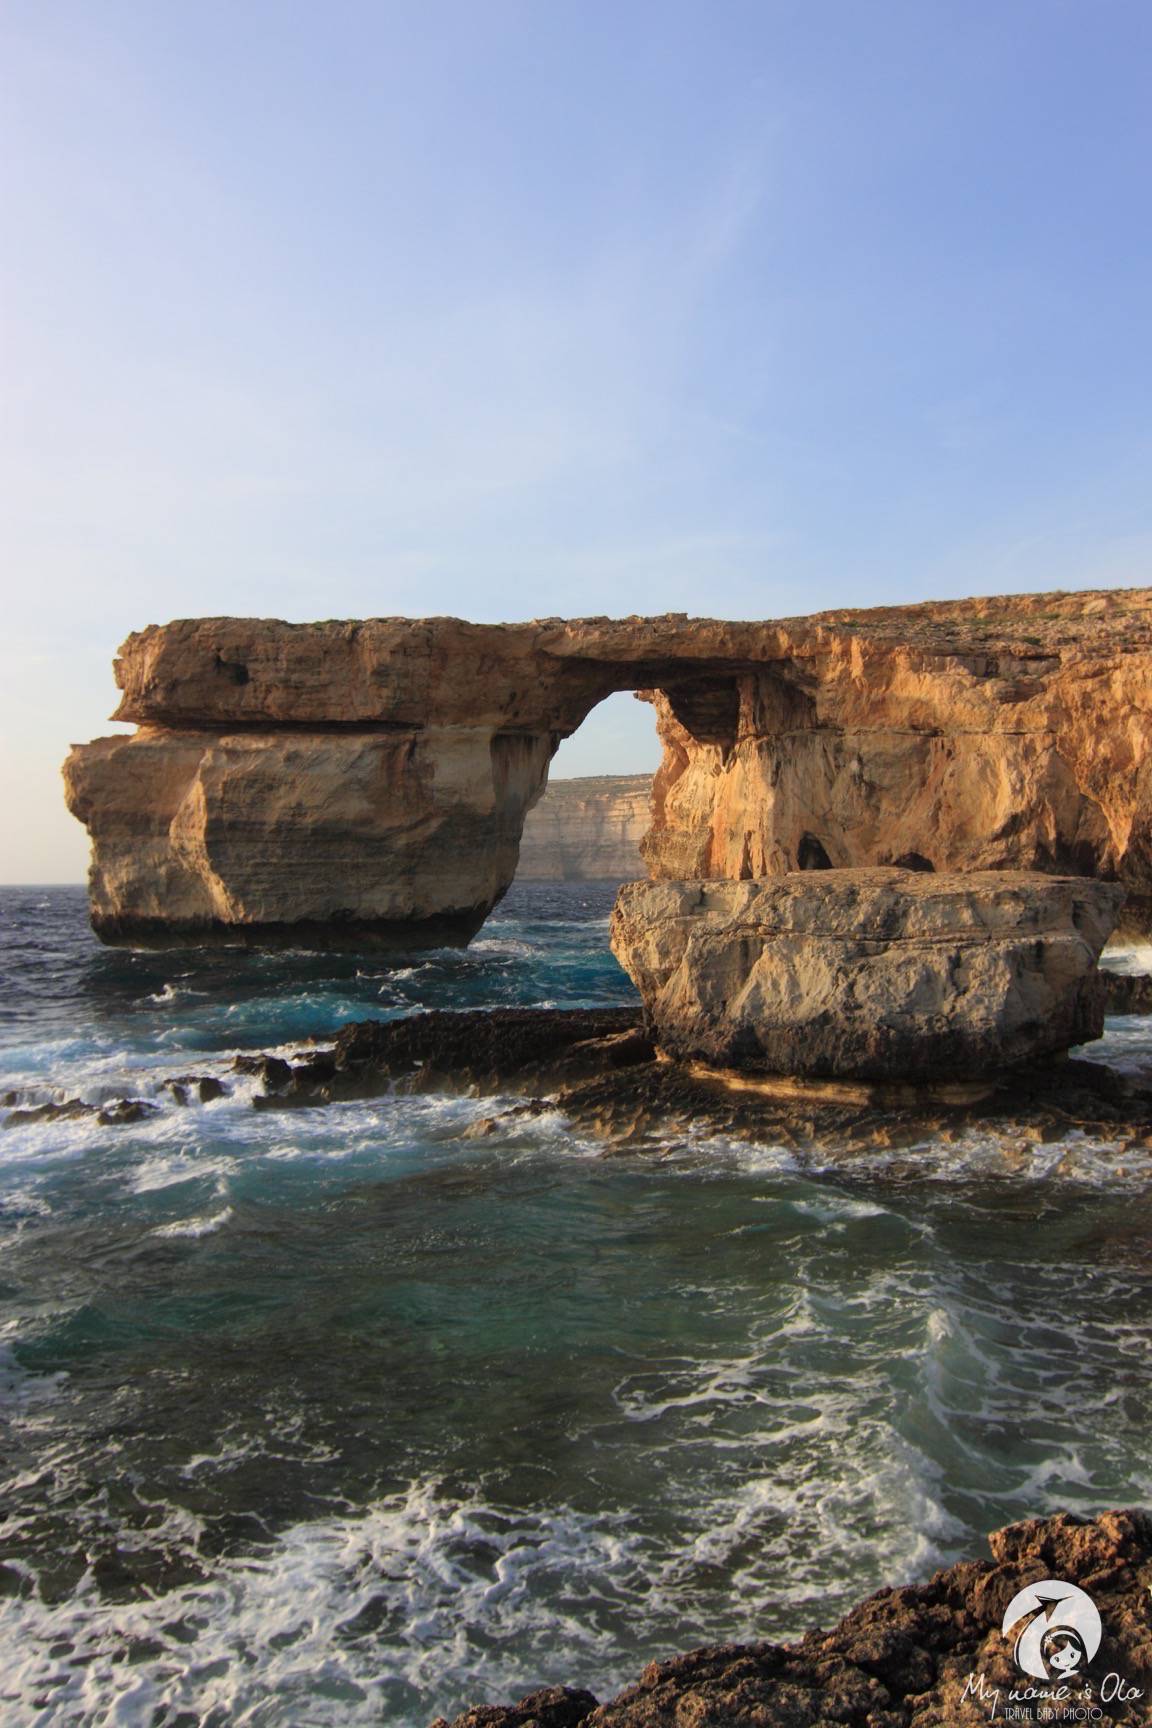 Azure Window, Gozo